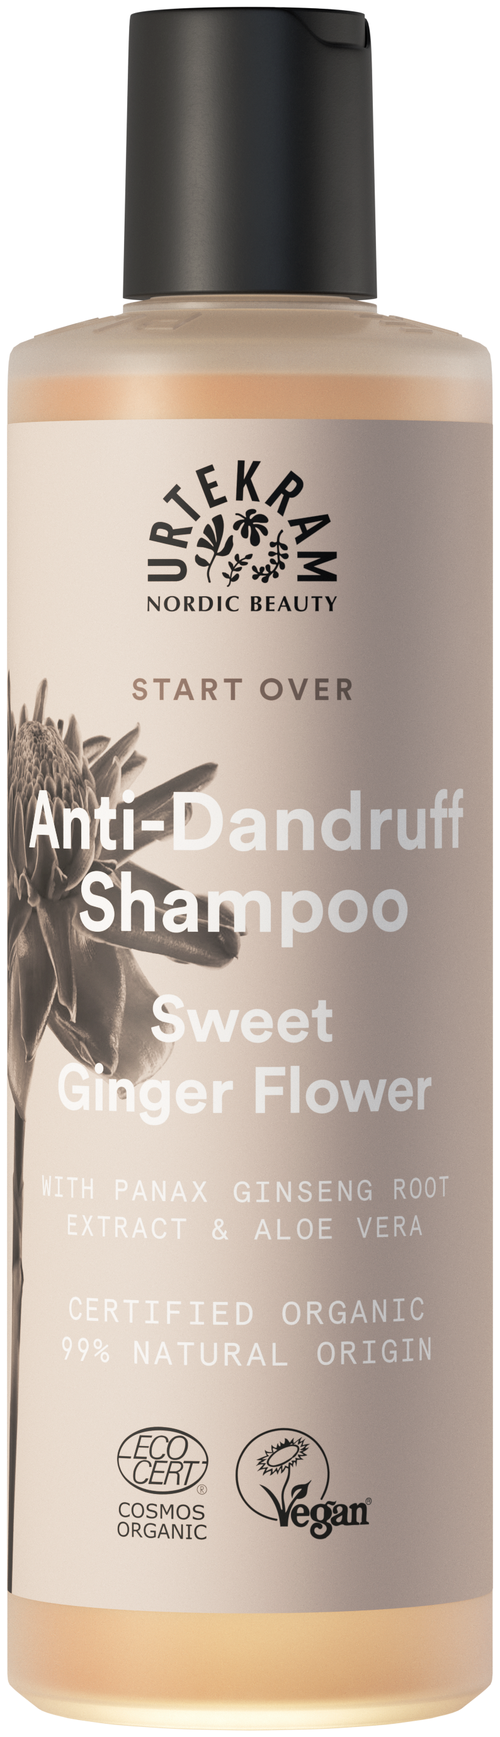 Шампунь для волос против перхоти Сладкий цветок имбиря, Urtekram, 250 мл